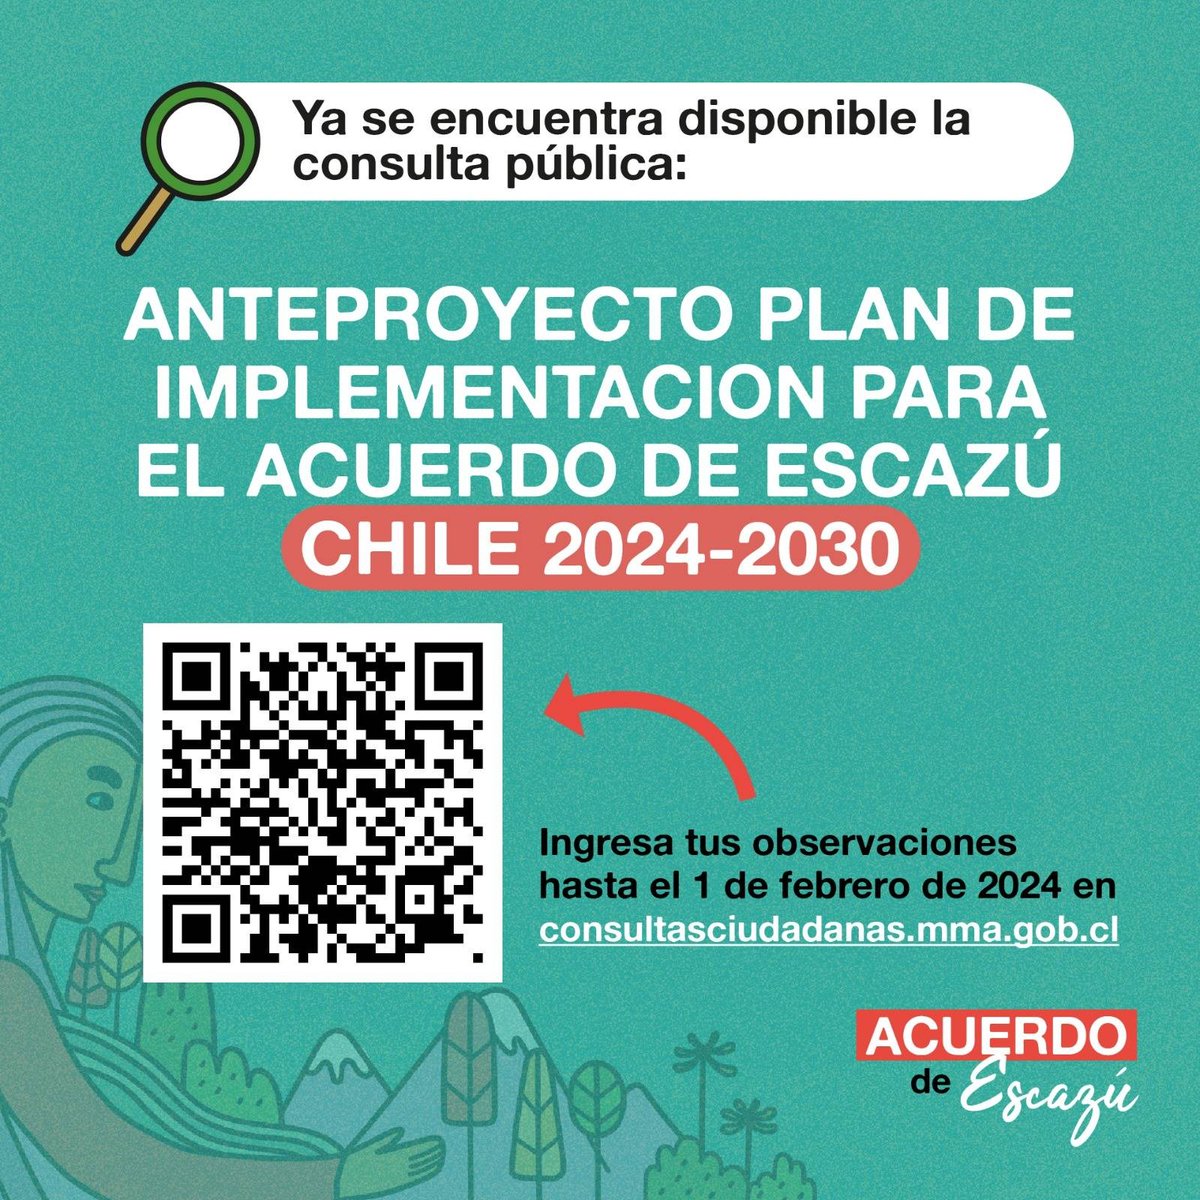 ¡Quedan pocos días ⚡️! No dejes pasar esta oportunidad para entregar tus comentarios✍️ sobre el plan de implementación del #AcuerdoDeEscazú en Chile 🇨🇱 👉Ingresa tus observaciones hasta el 1 de febrero en consultasciudadanas.mma.gob.cl/portal/consult…